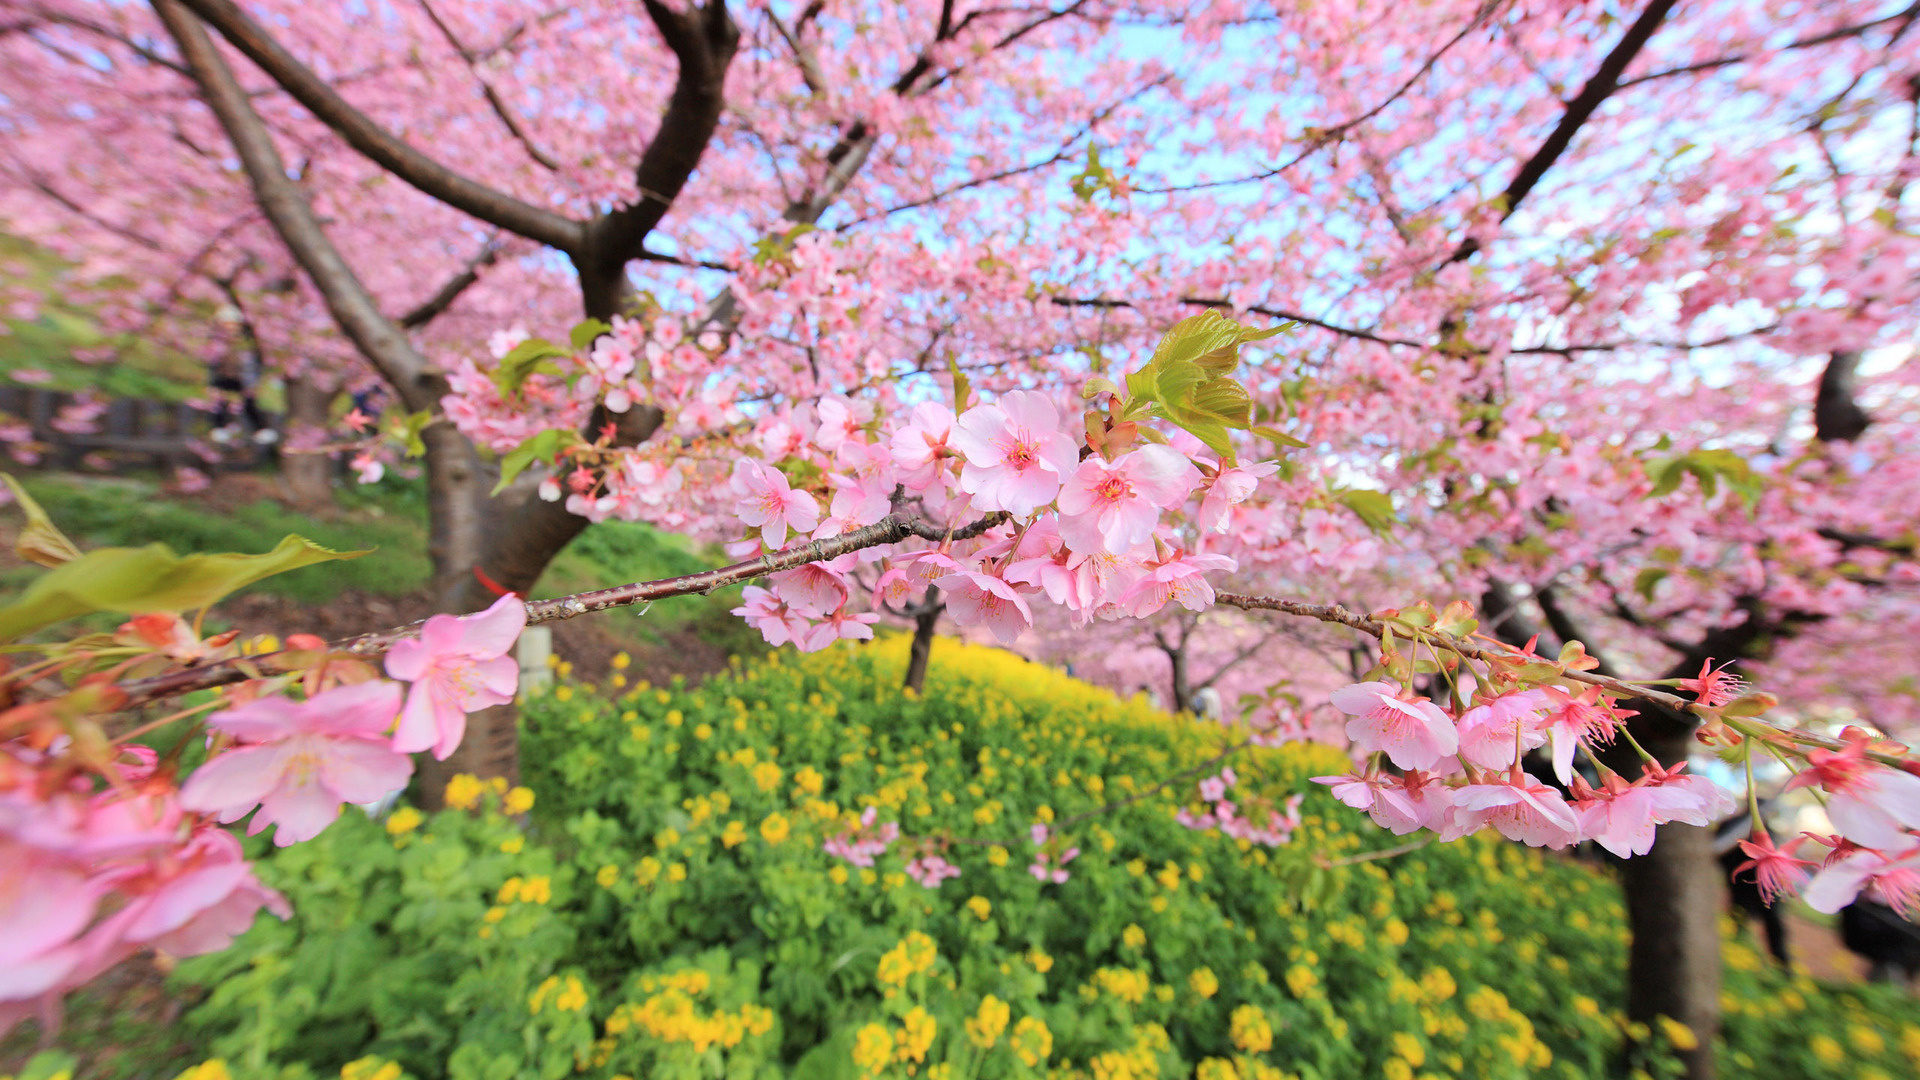 spring_bloom_tree_flowers_93587_1920x1080.jpg